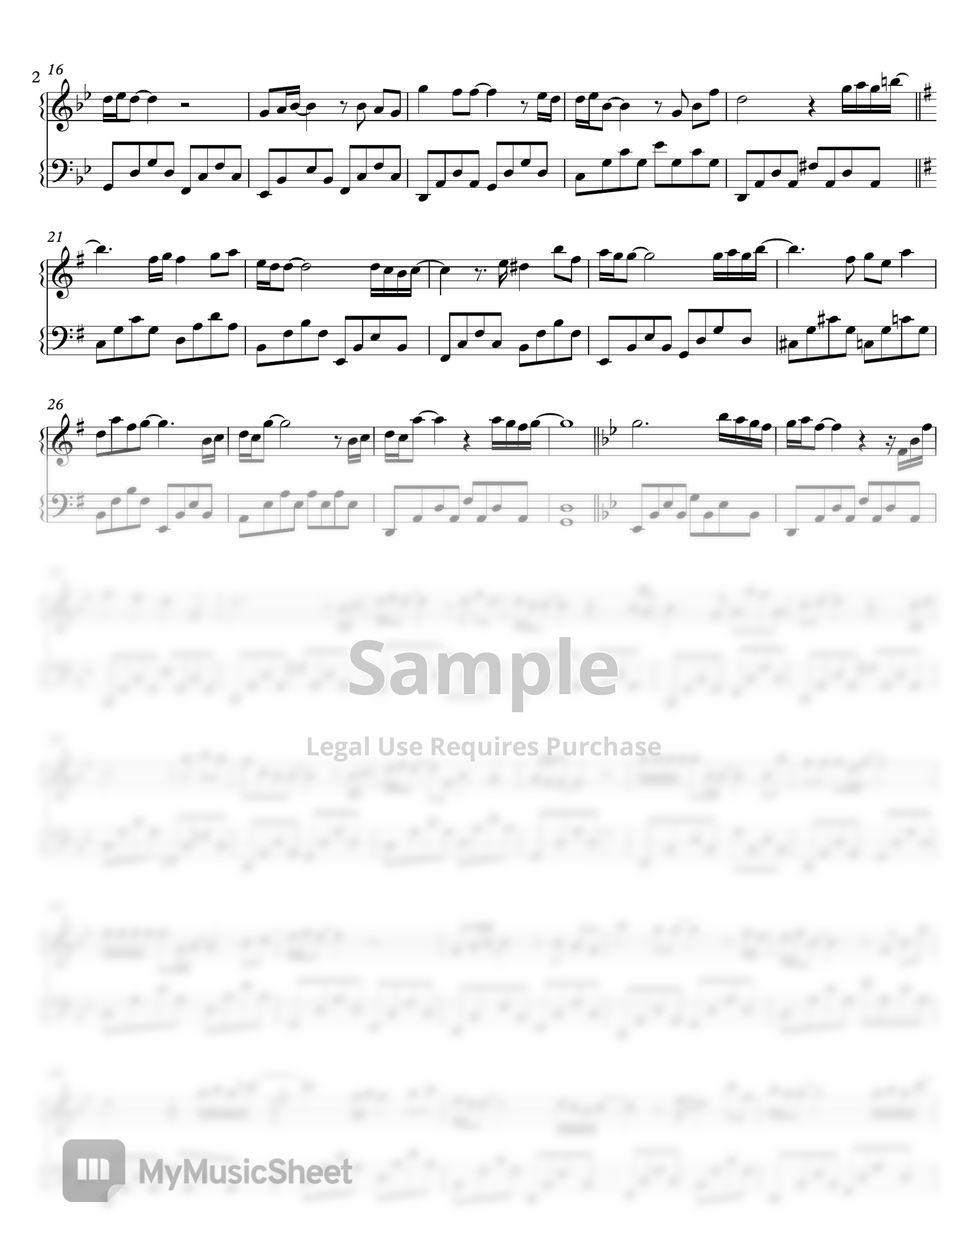 Baka Mitai - Piano Solo - Digital Sheet Music